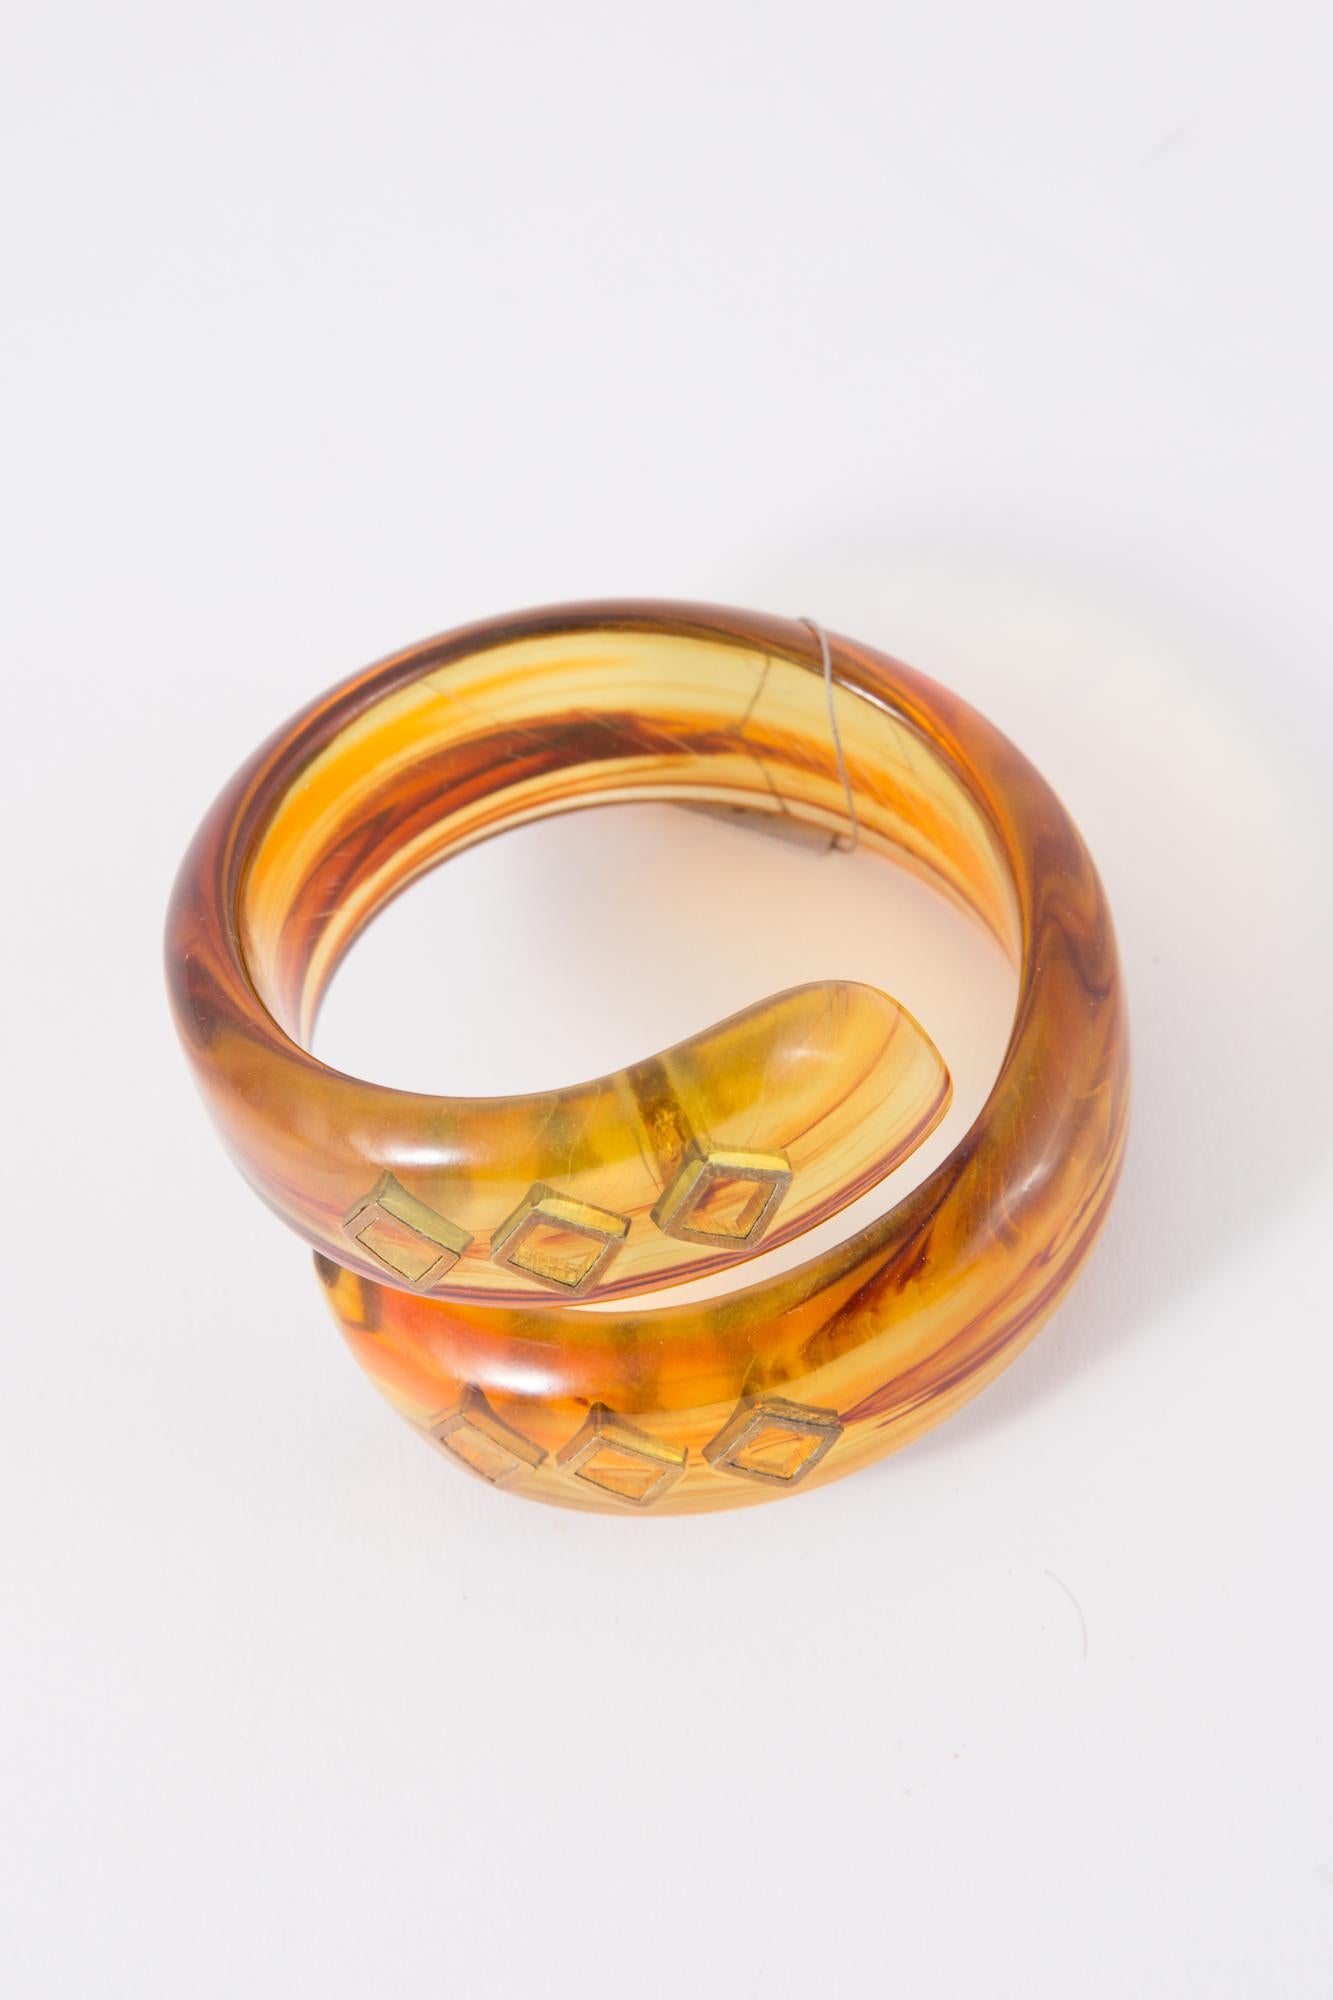 Le bracelet serpent en résine de Pierre Cardin présente un double cru, des détails dorés, une plaque intérieure Pierre Cardin.
Circa : 1960
En bon état vintage (quelques petites rayures à l'intérieur de la partie en résine).  
Diamètre intérieur 6